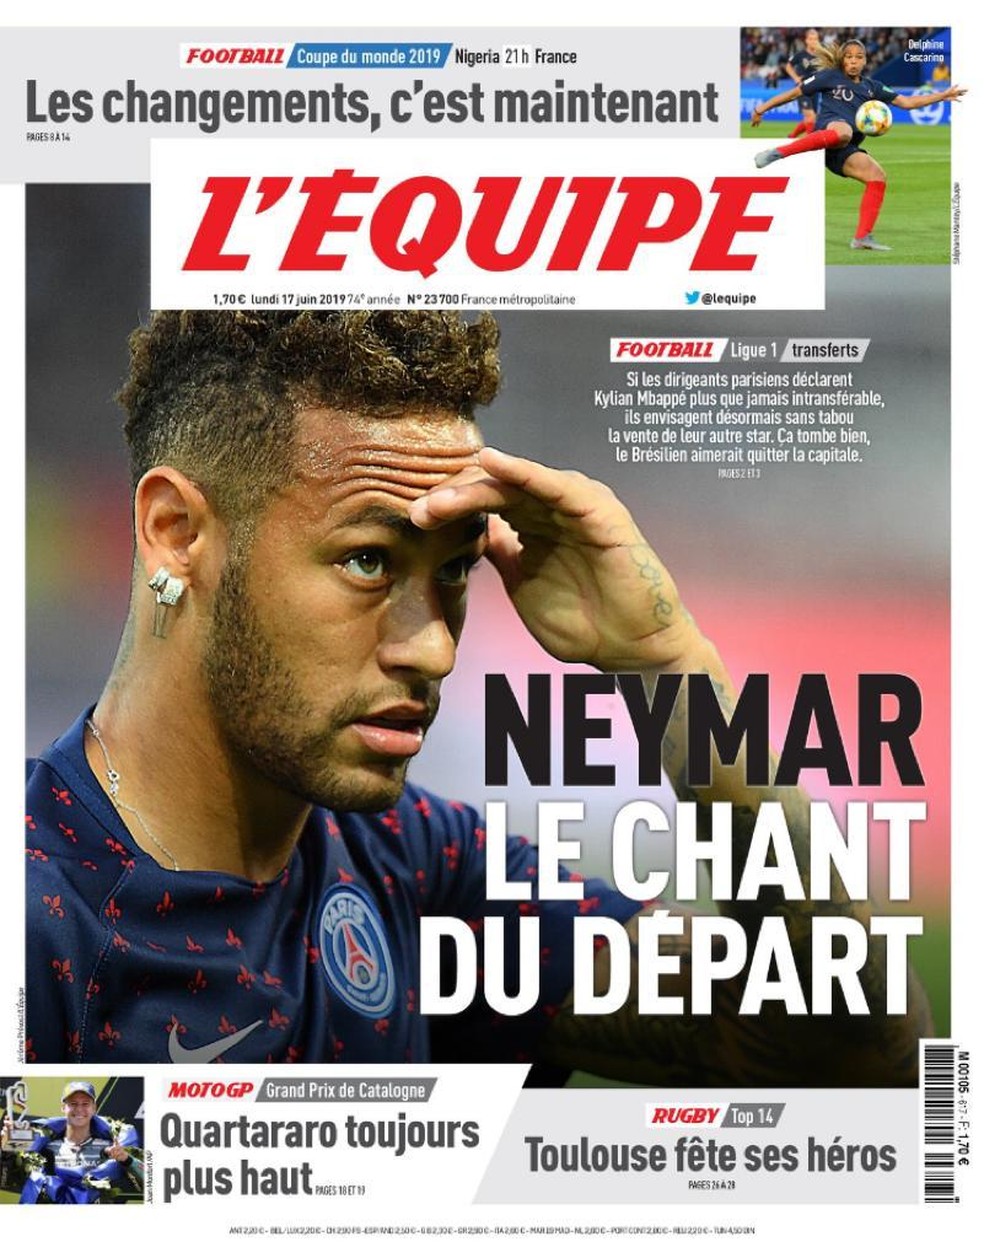 Neymar tambÃ©m vem sendo destaque na imprensa francesa â Foto: ReproduÃ§Ã£o/L'Equipe